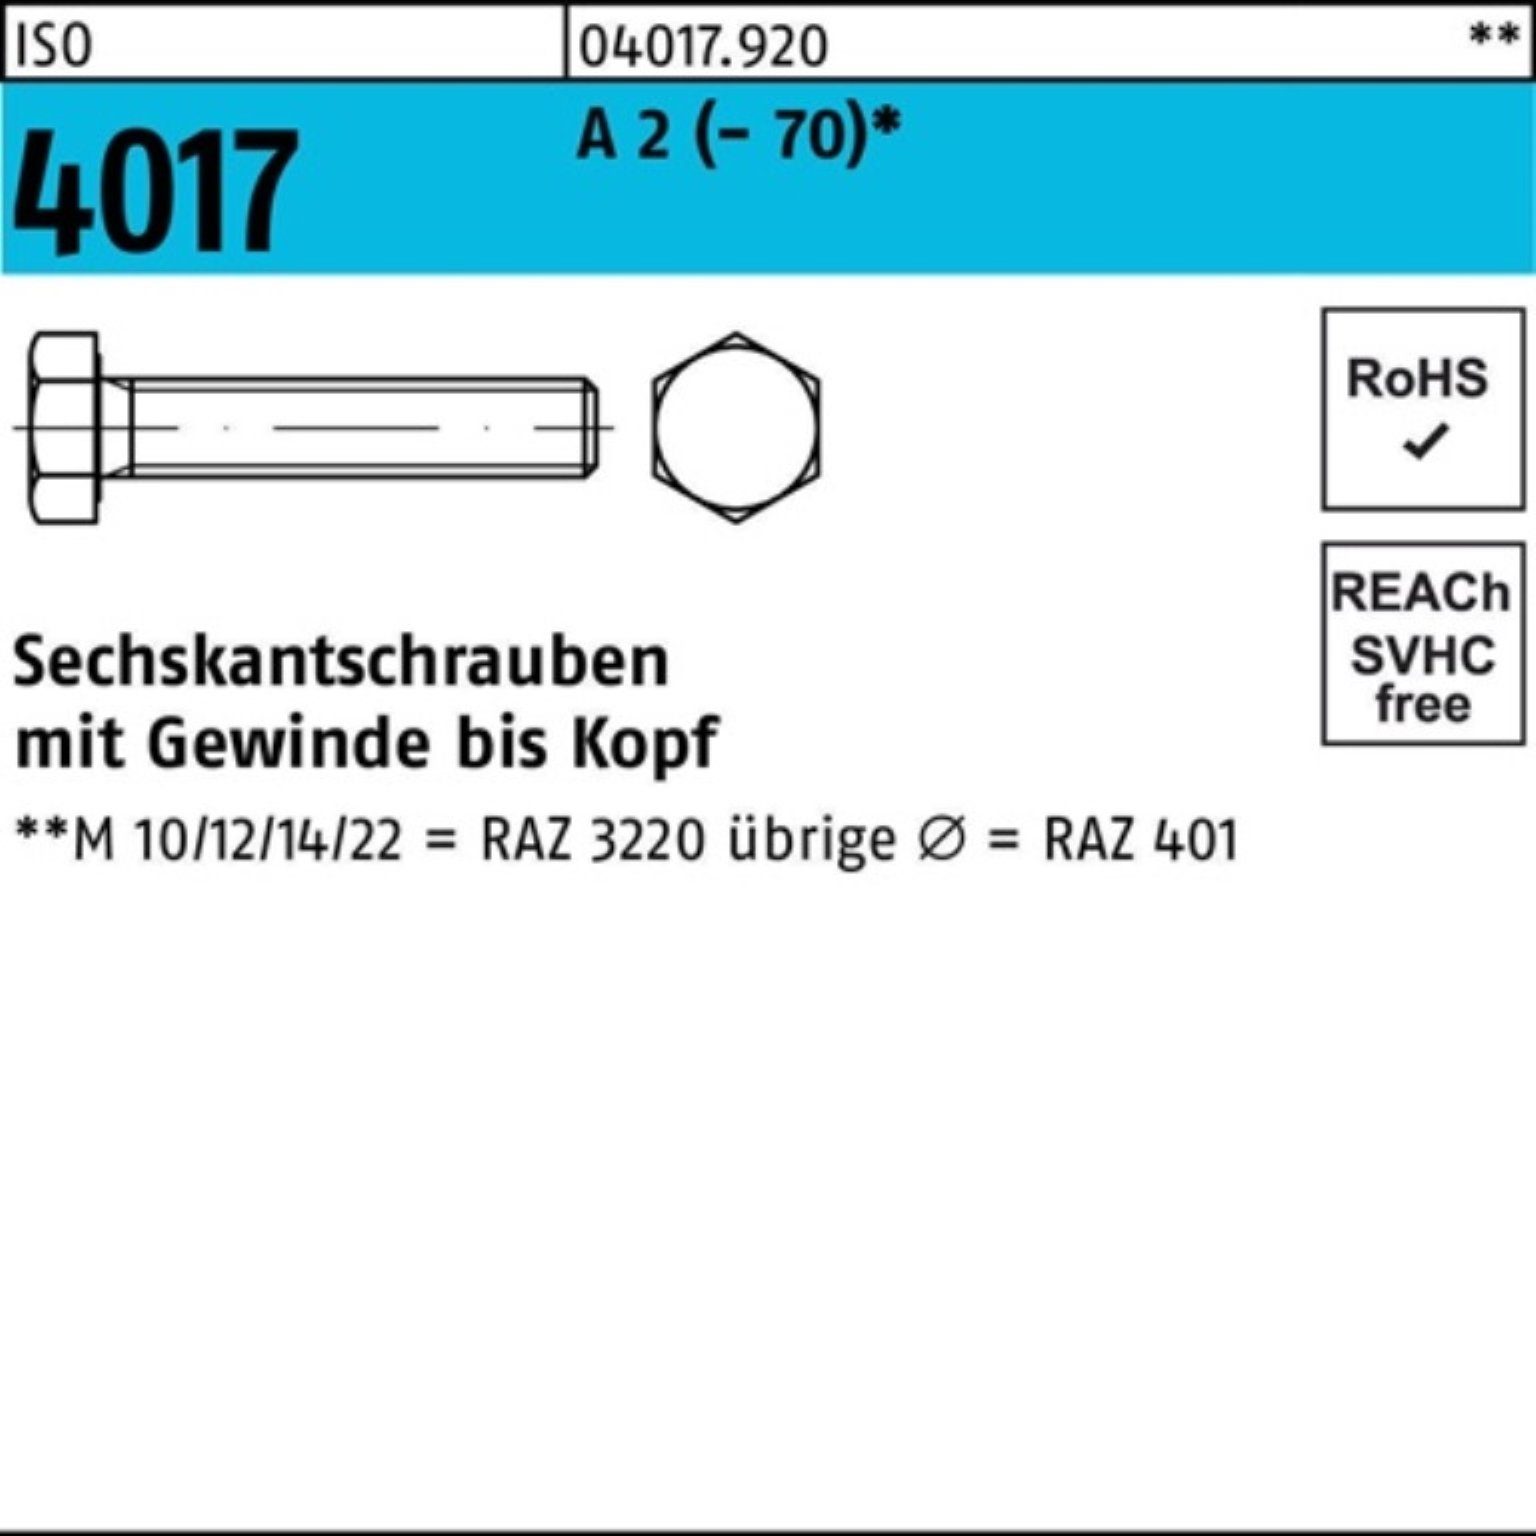 Bufab Sechskantschraube 100er Pack Sechskantschraube ISO 4017 VG M3x 6 A 2 (70) 100 Stück I